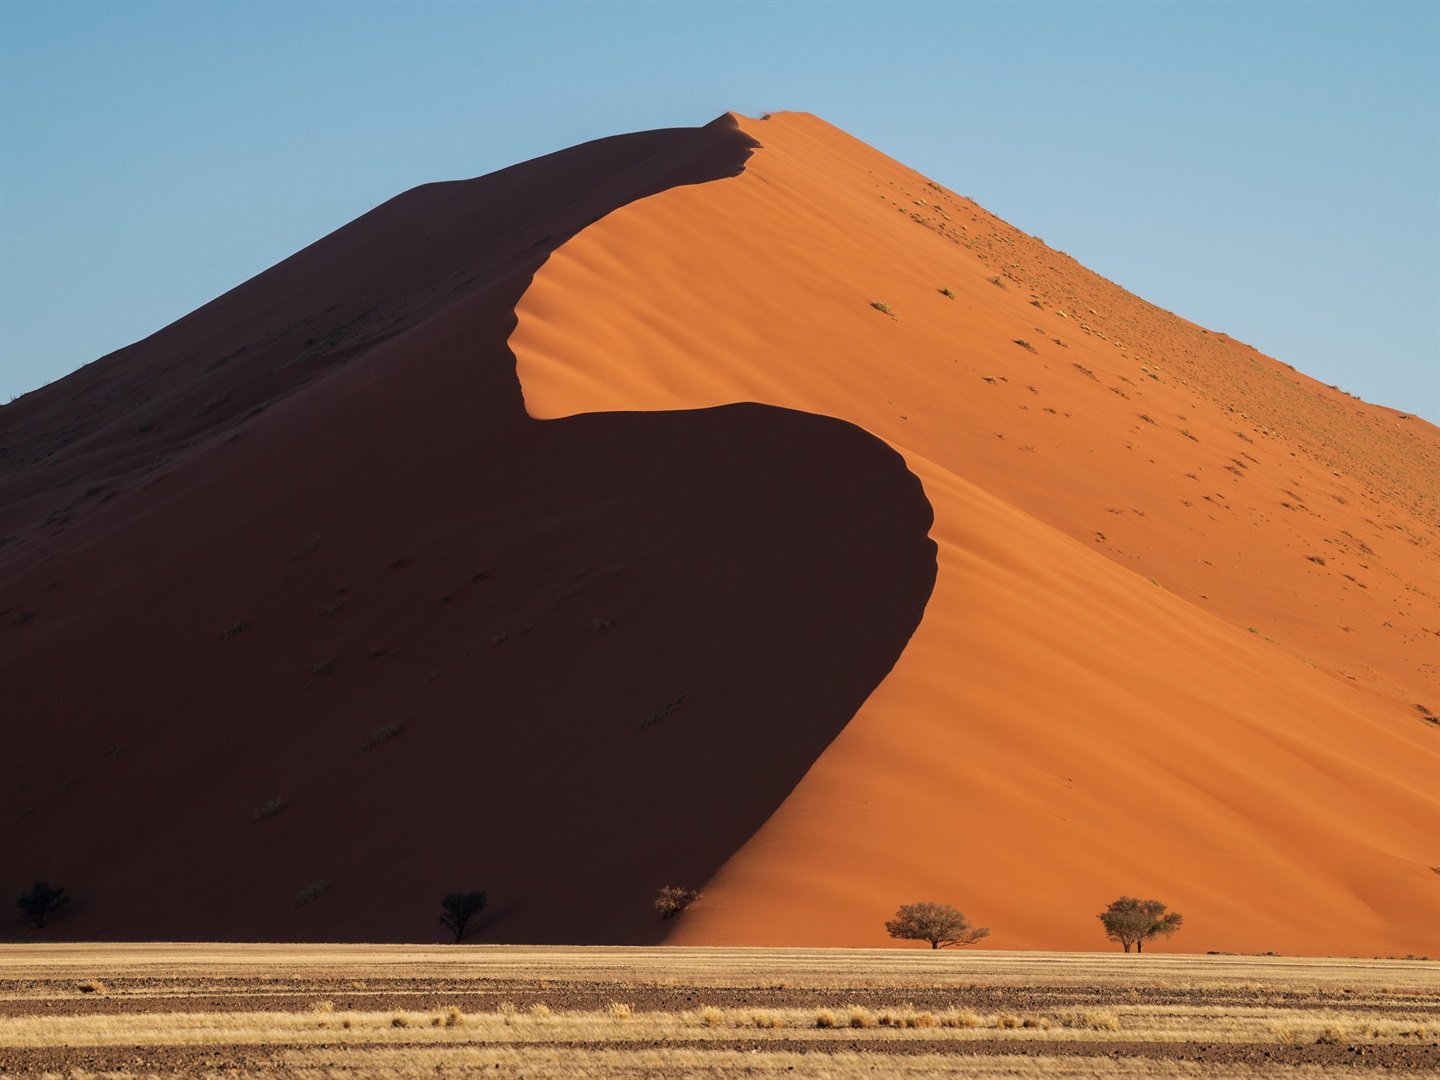 Fotografié el remoto desierto de Namibia después de que lluvias ultra raras lo transformaran en un oasis